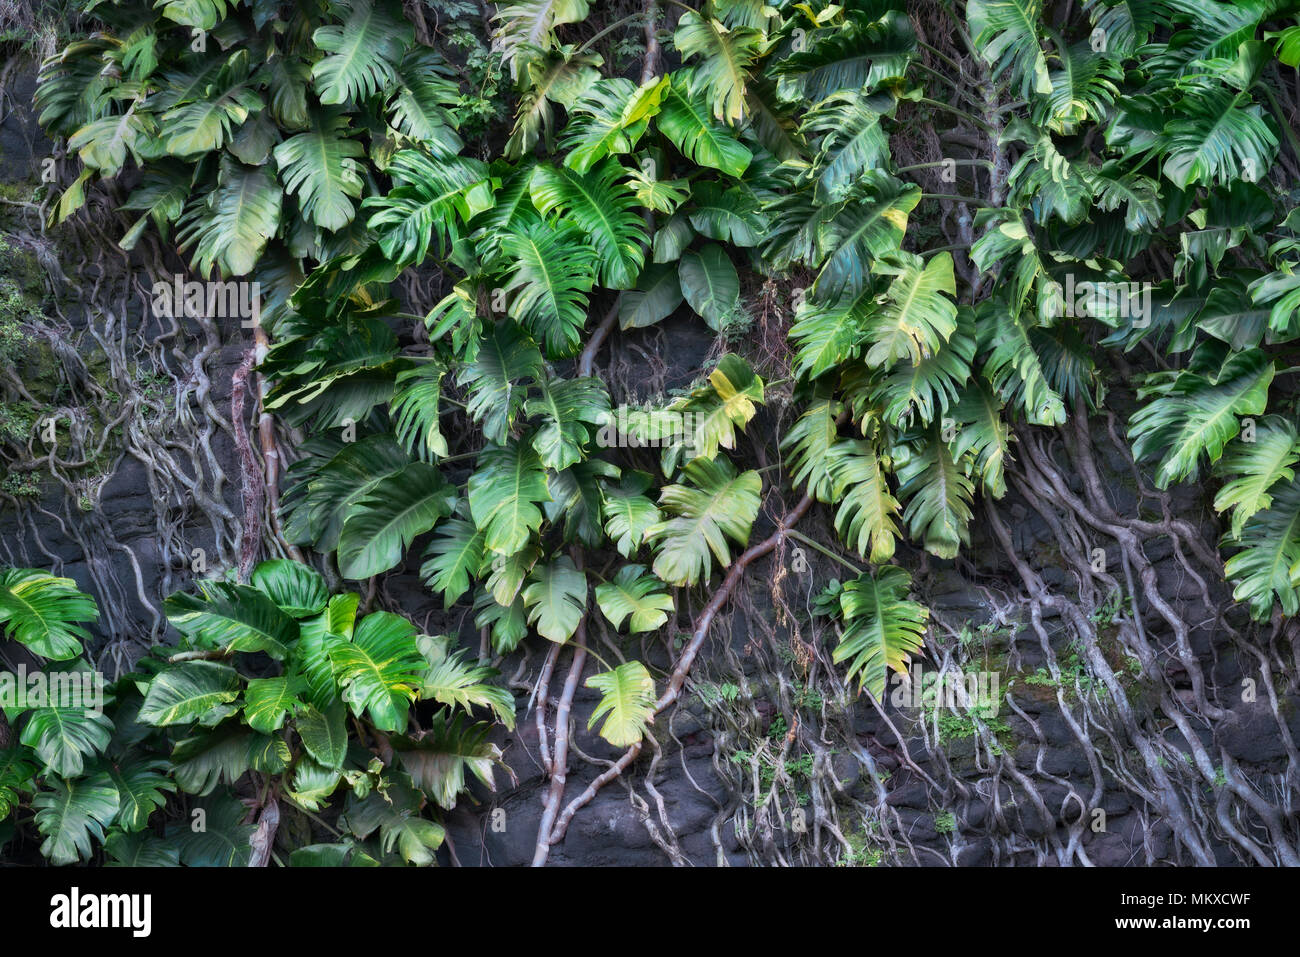 Philodendron gedeihen in feucht und schwül Hawaii Insel Kauai mit ihren langen Wurzeln klammerte sich an Lavawänden entlang der Nordküste in der Nähe von Haena Strand. Stockfoto